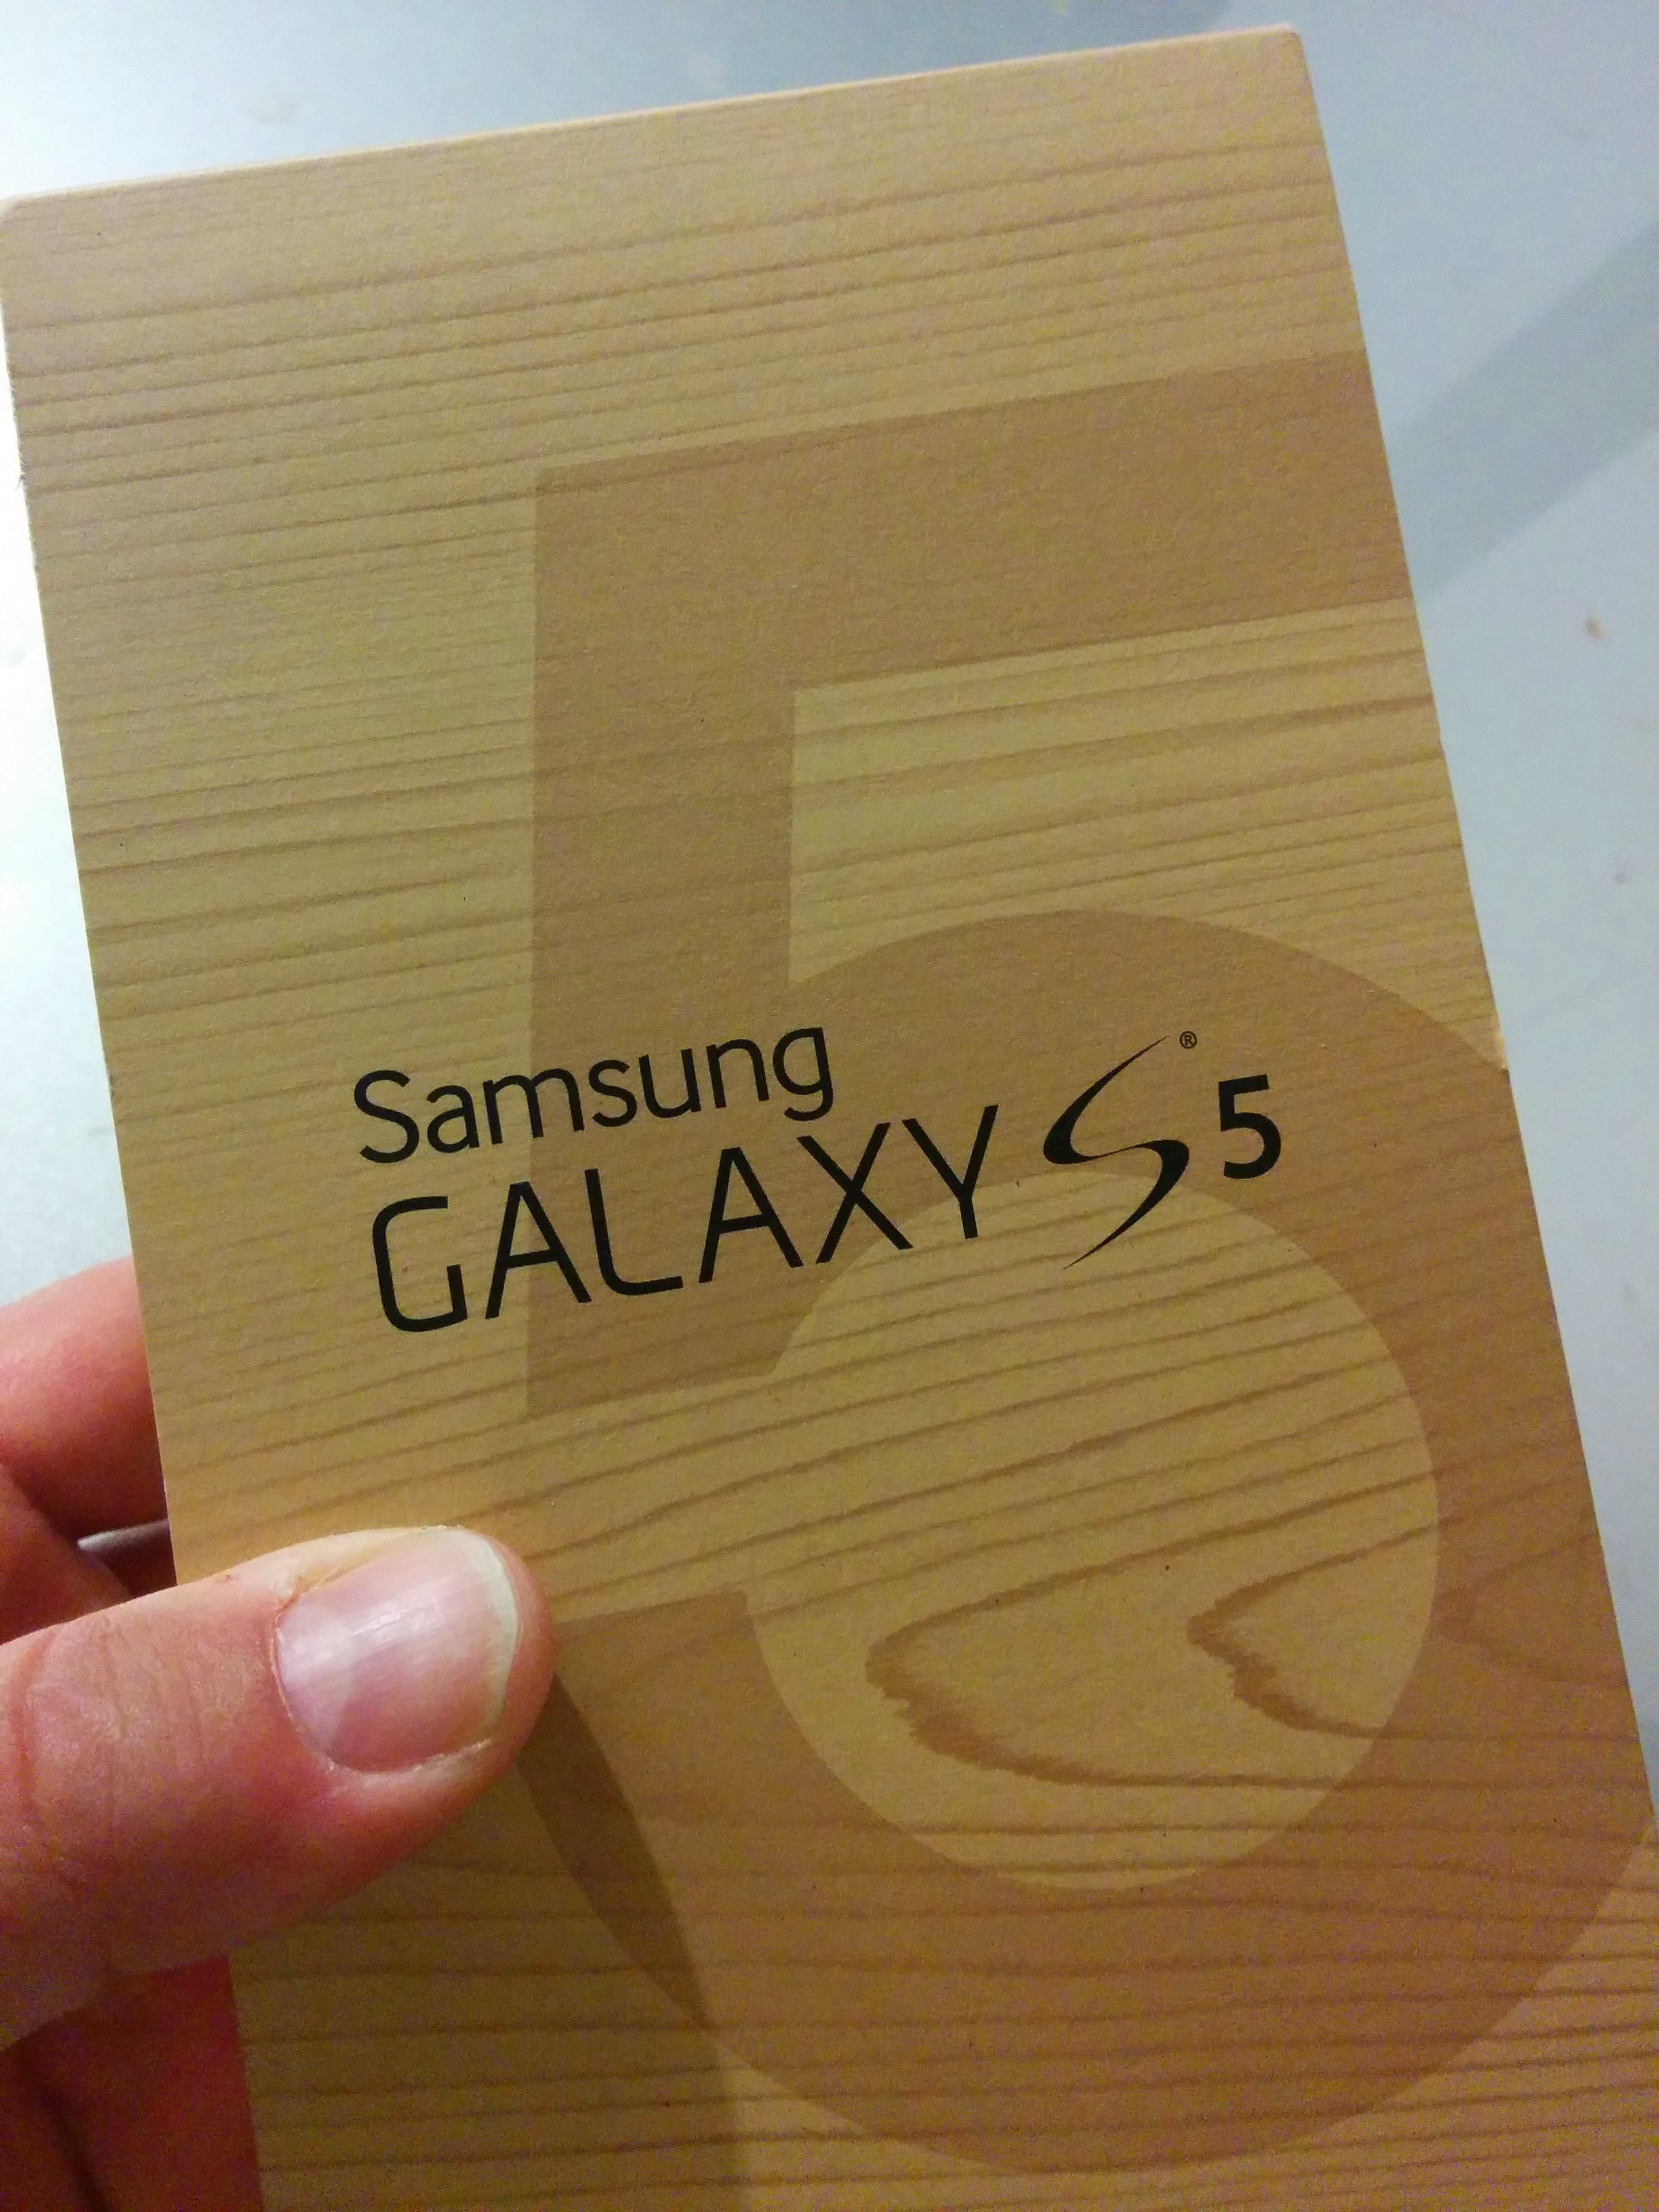 Galaxy S5 Box